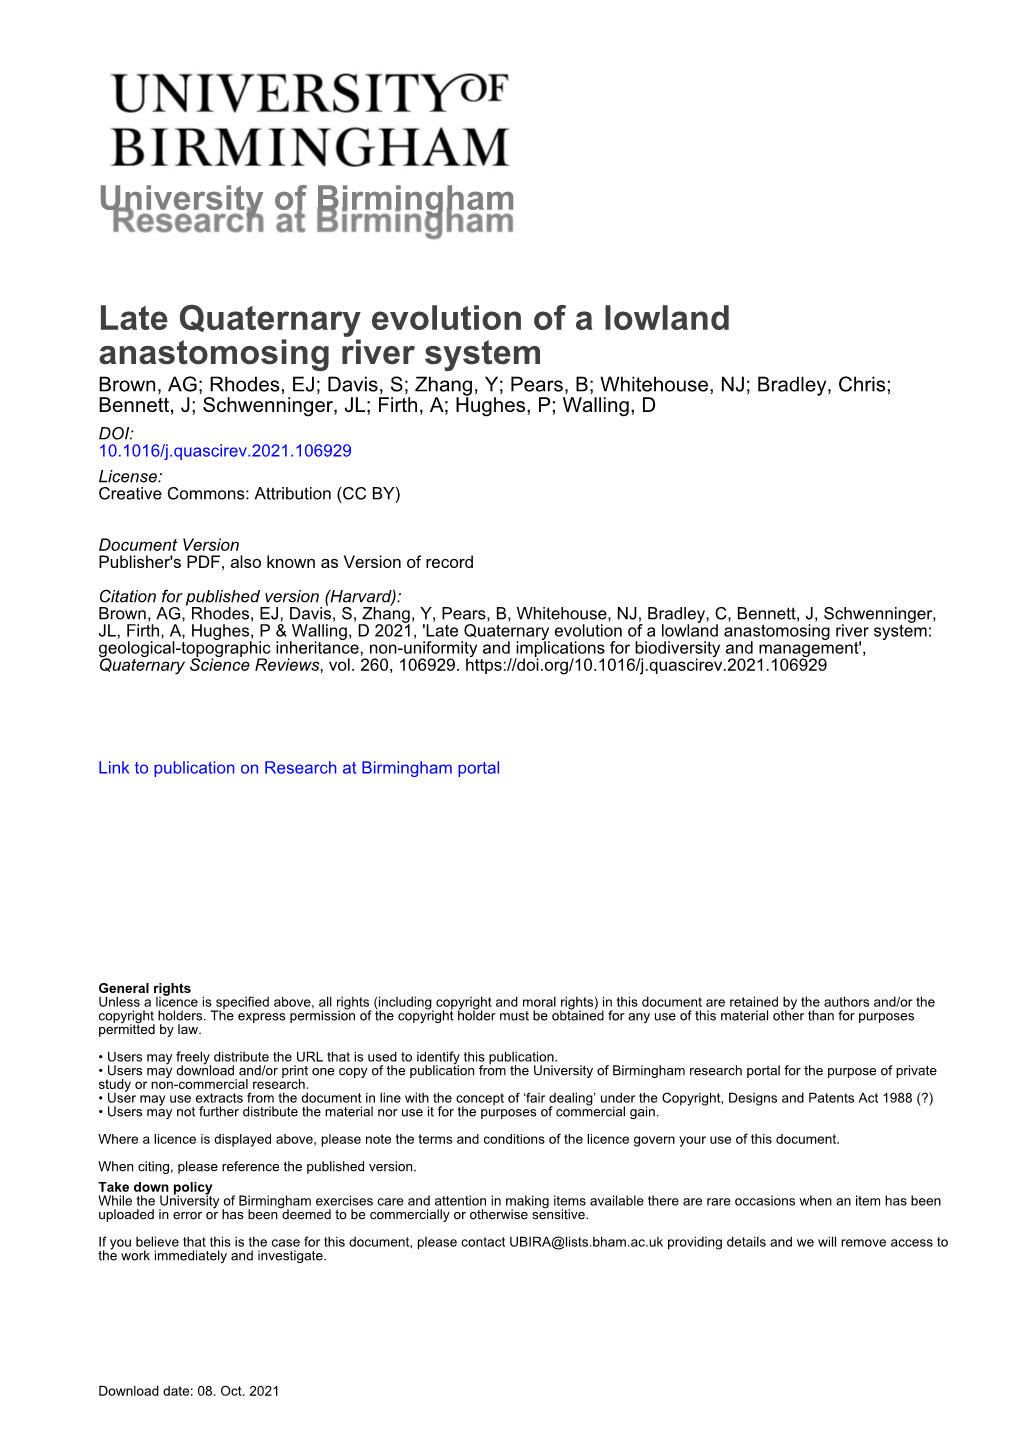 Late Quaternary Evolution of a Lowland Anastomosing River System